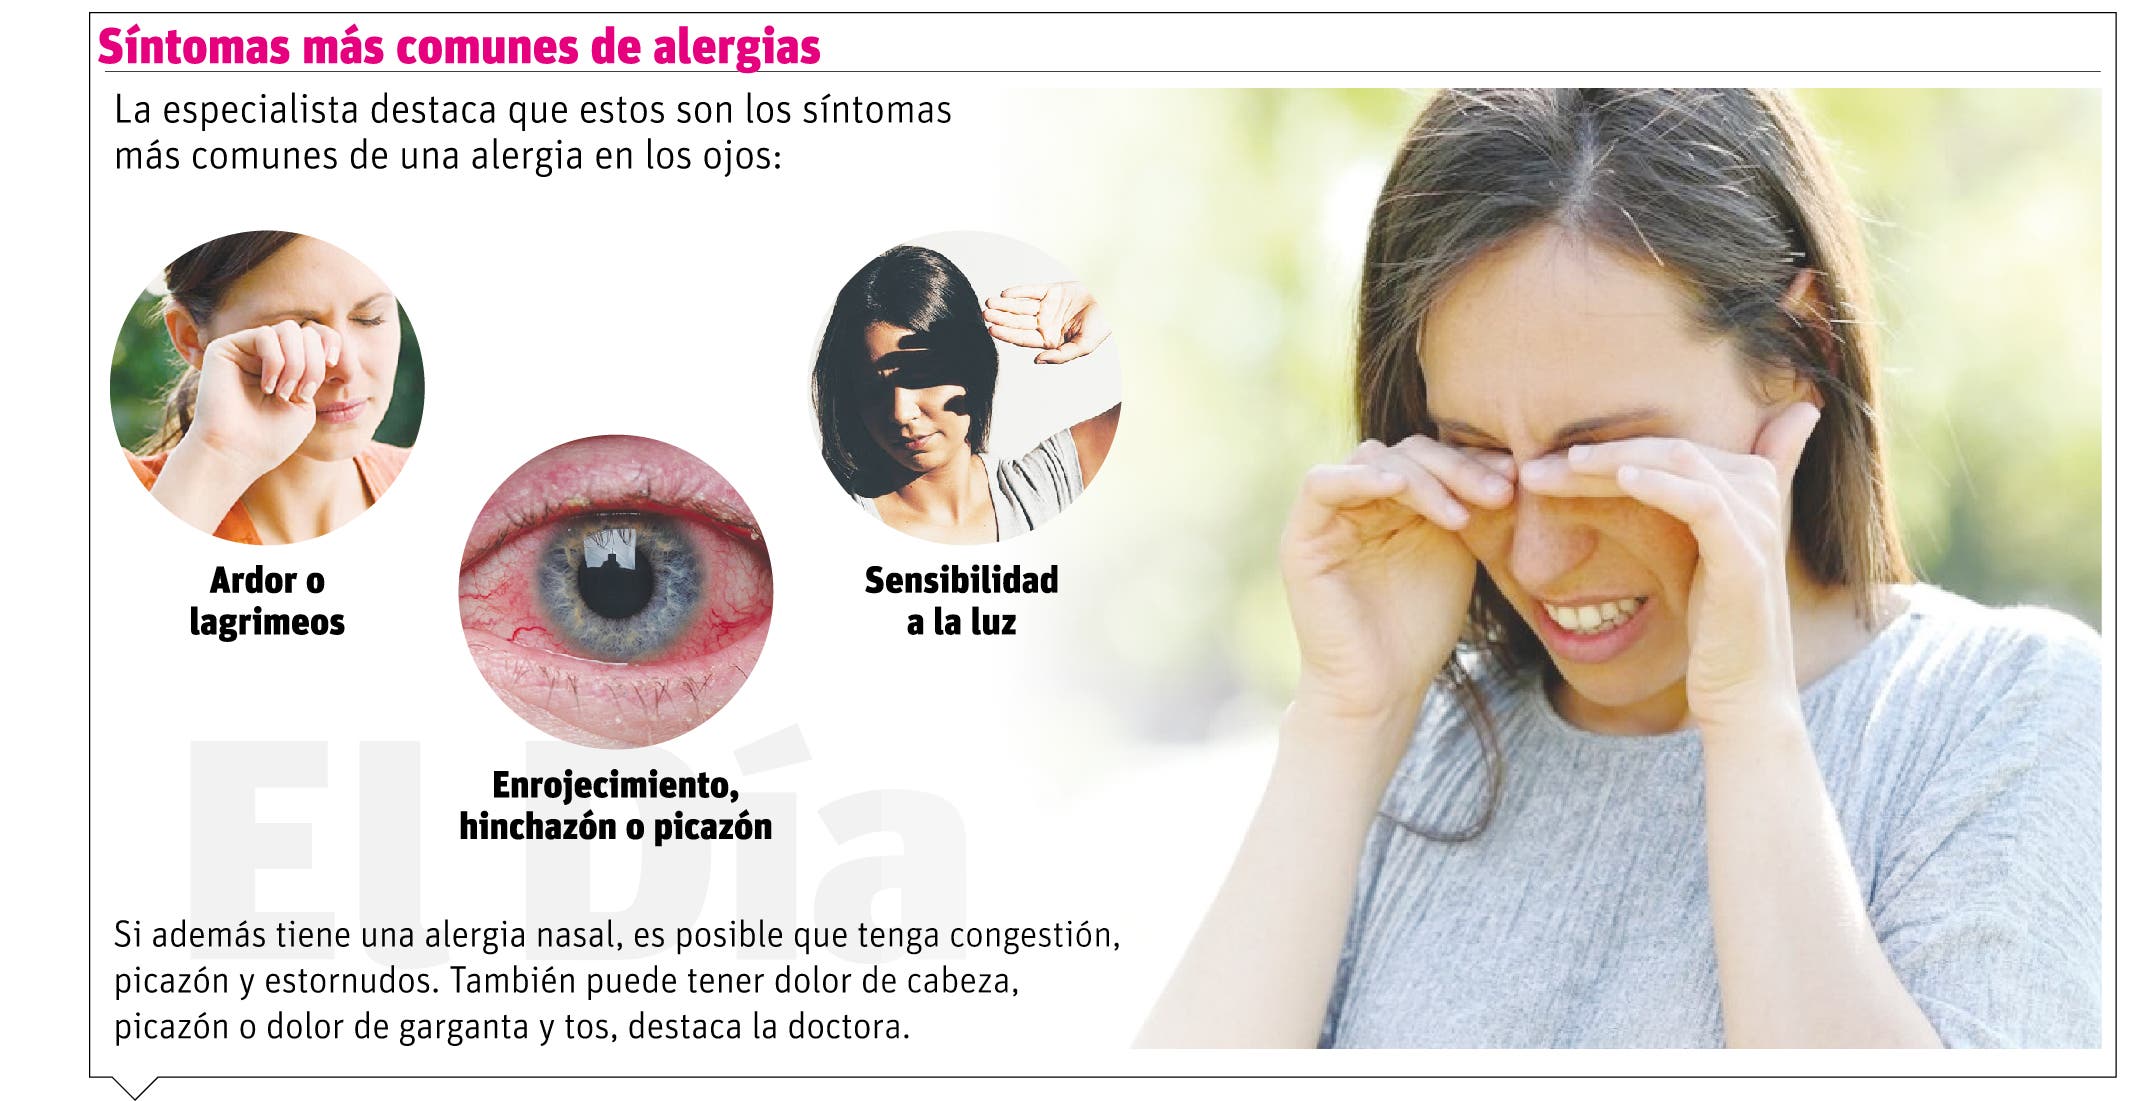 Alergia ocular, una afección temporal asociada con las estaciones